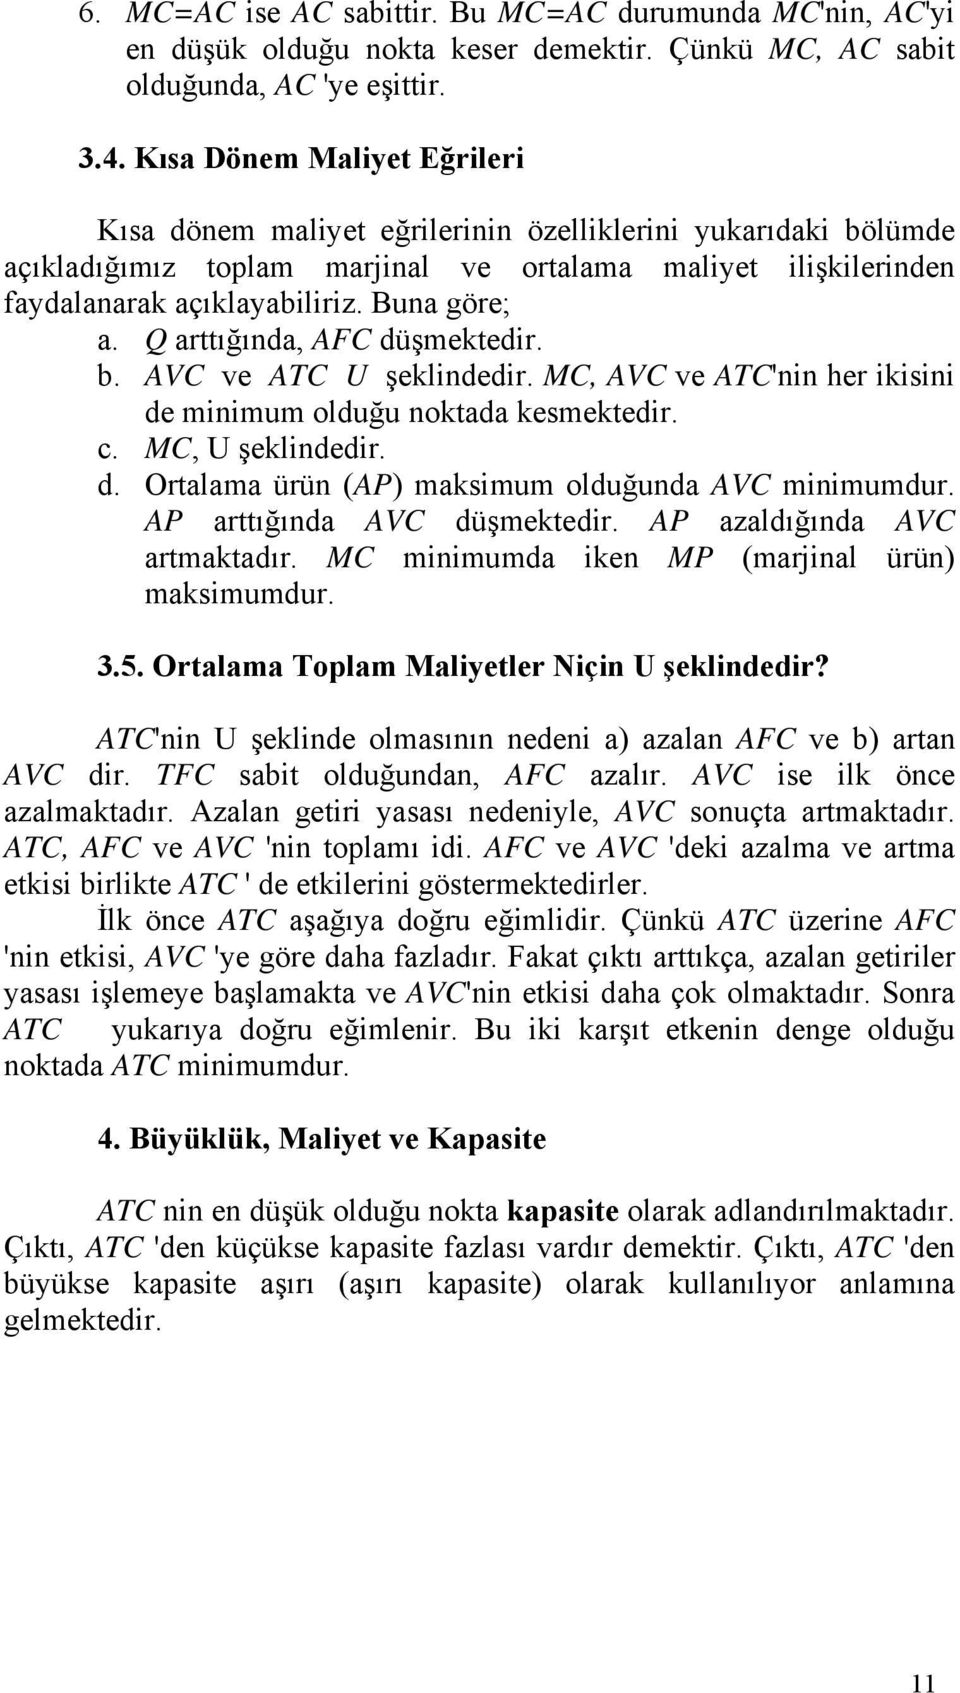 Q arttığında, AFC düşmektedir. b. AVC ve ATC U şeklindedir. MC, AVC ve ATC'nin her ikisini de minimum olduğu noktada kesmektedir. c. MC, U şeklindedir. d. Ortalama ürün (AP) maksimum olduğunda AVC minimumdur.